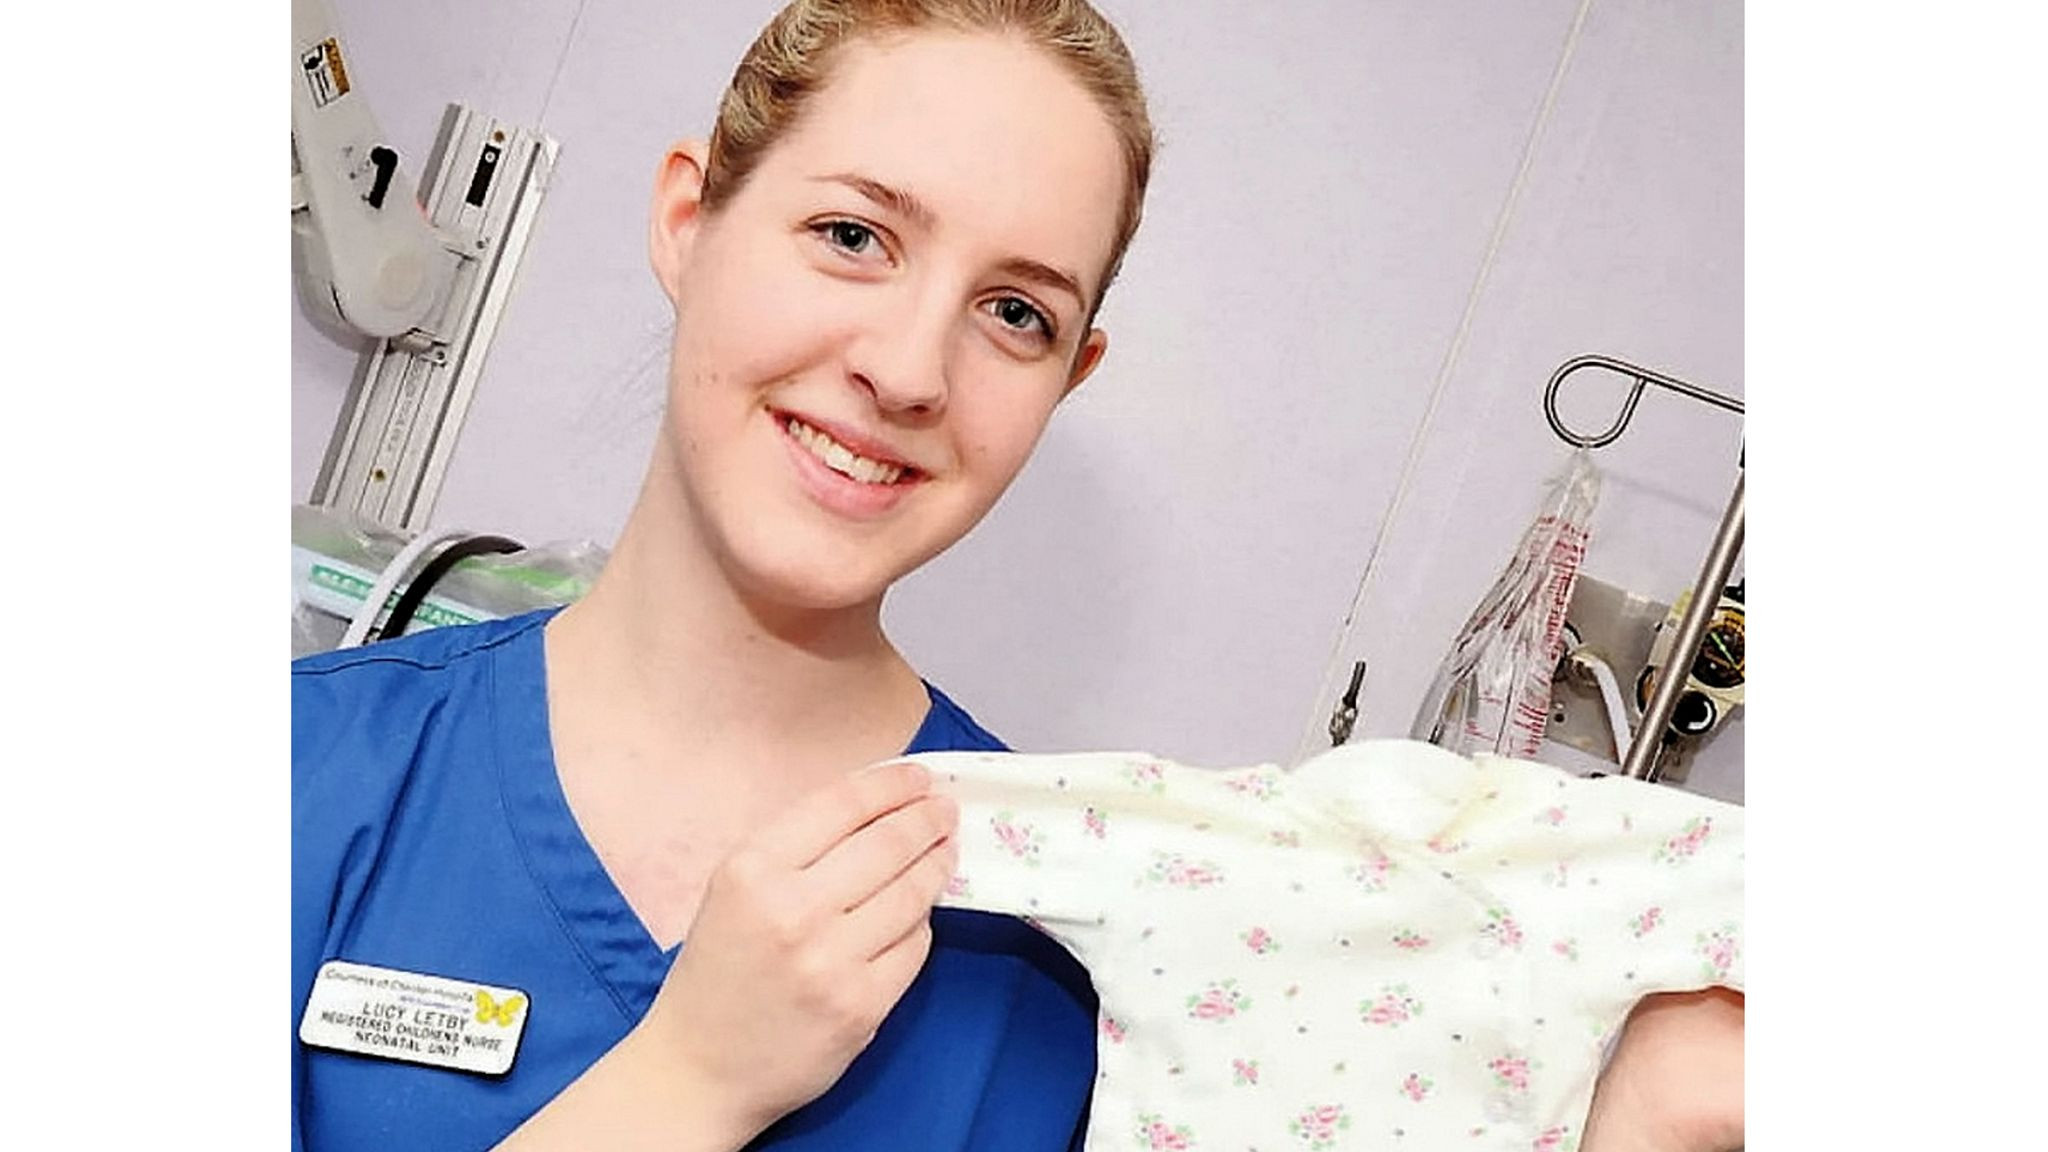 Νοσοκόμα στη Βρετανία κατηγορείται ότι σκότωνε νεογνά με ινσουλίνη – «Είμαι διαβολικός άνθρωπος»